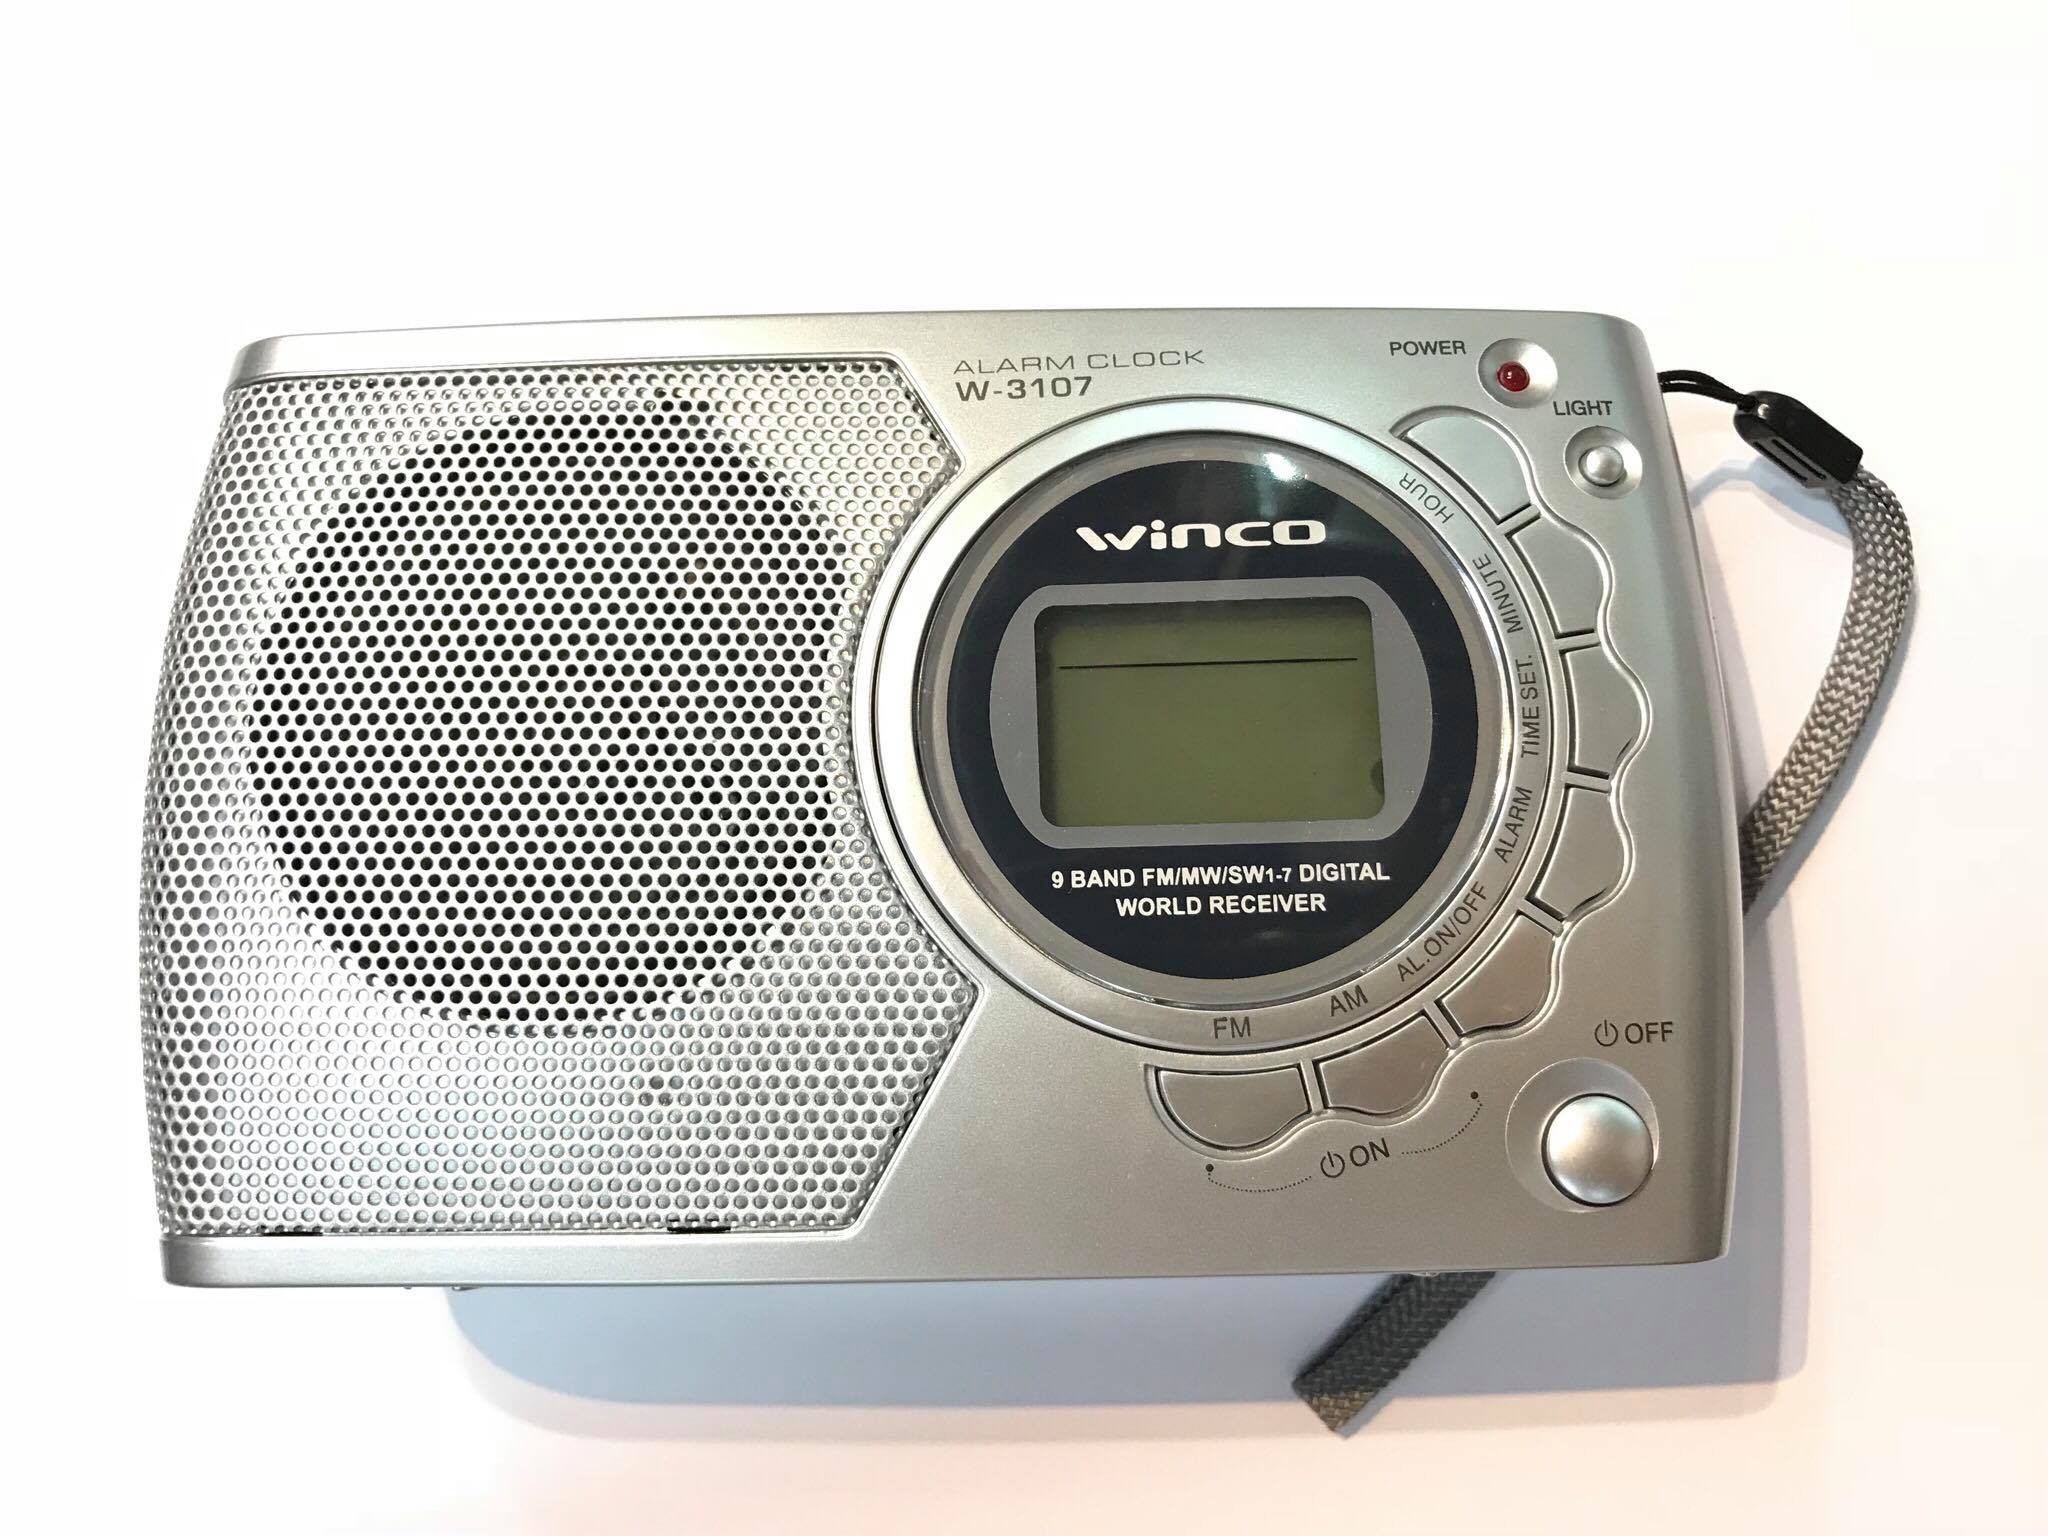 Comprá Radio Despertador Kolke KVR-403 FM Bluetooth - Negro